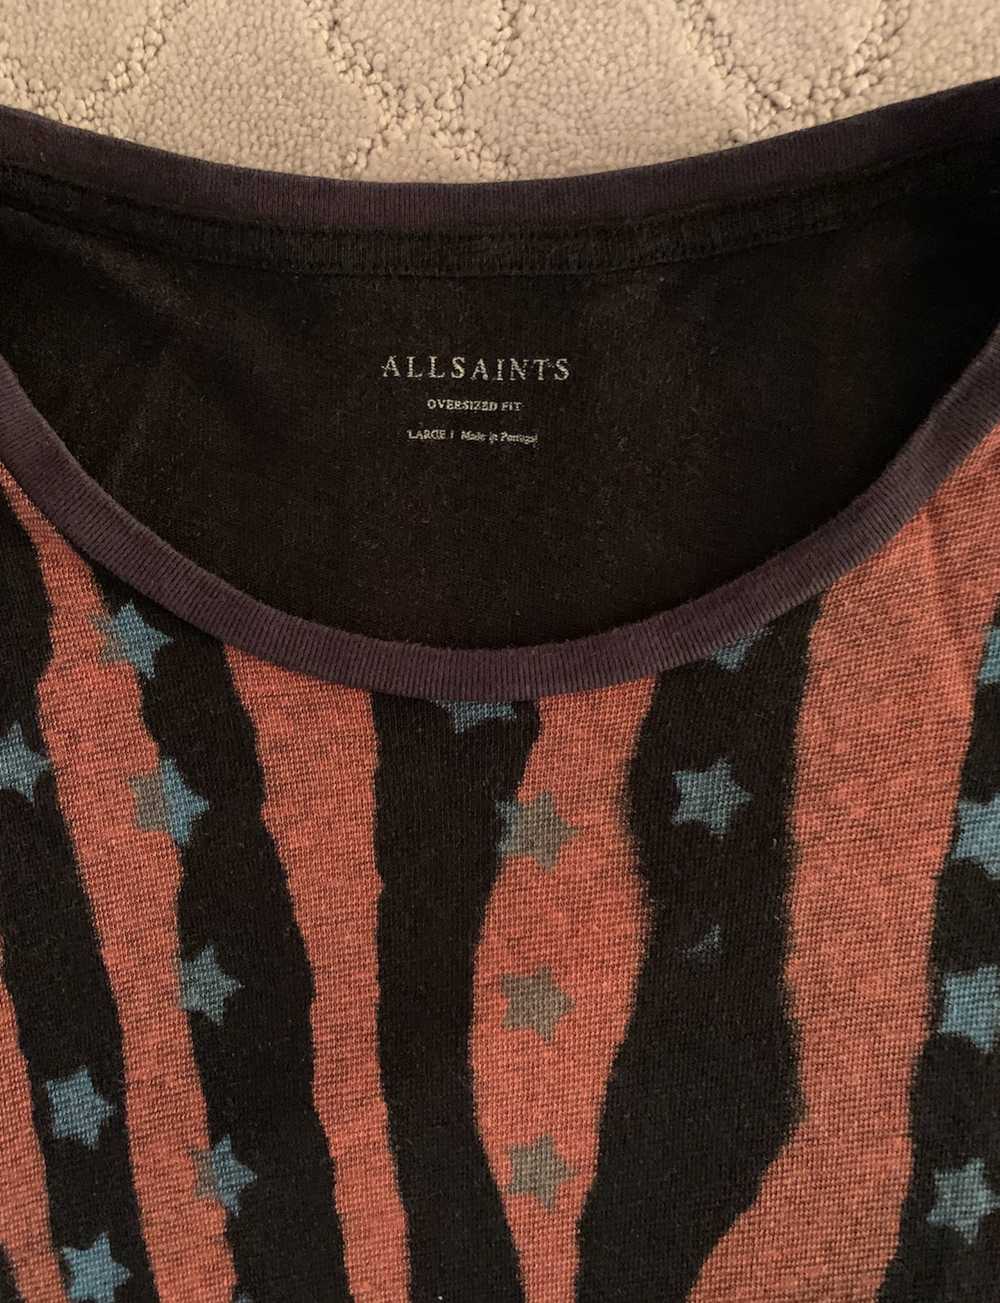 Allsaints All Saints T-shirt - image 3